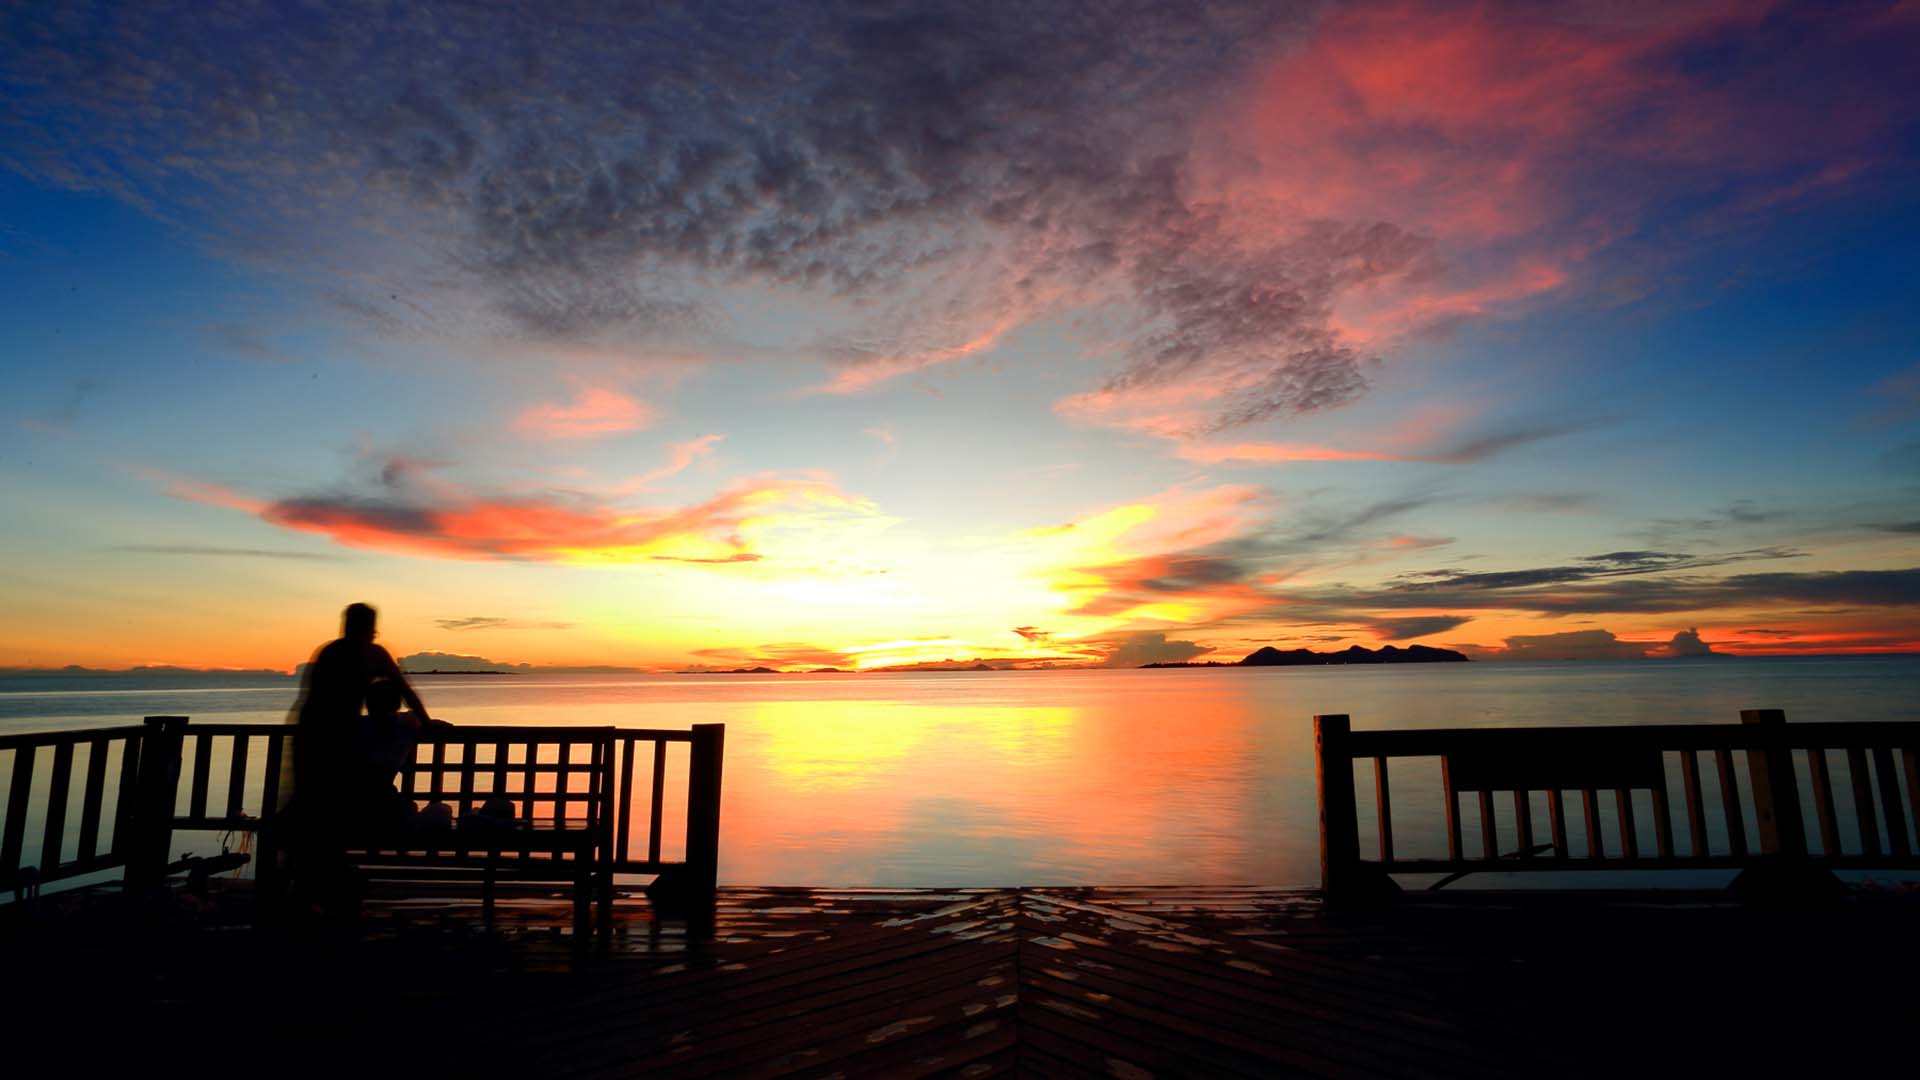 海边风景图片 海边夕阳唯美风景图片(3)